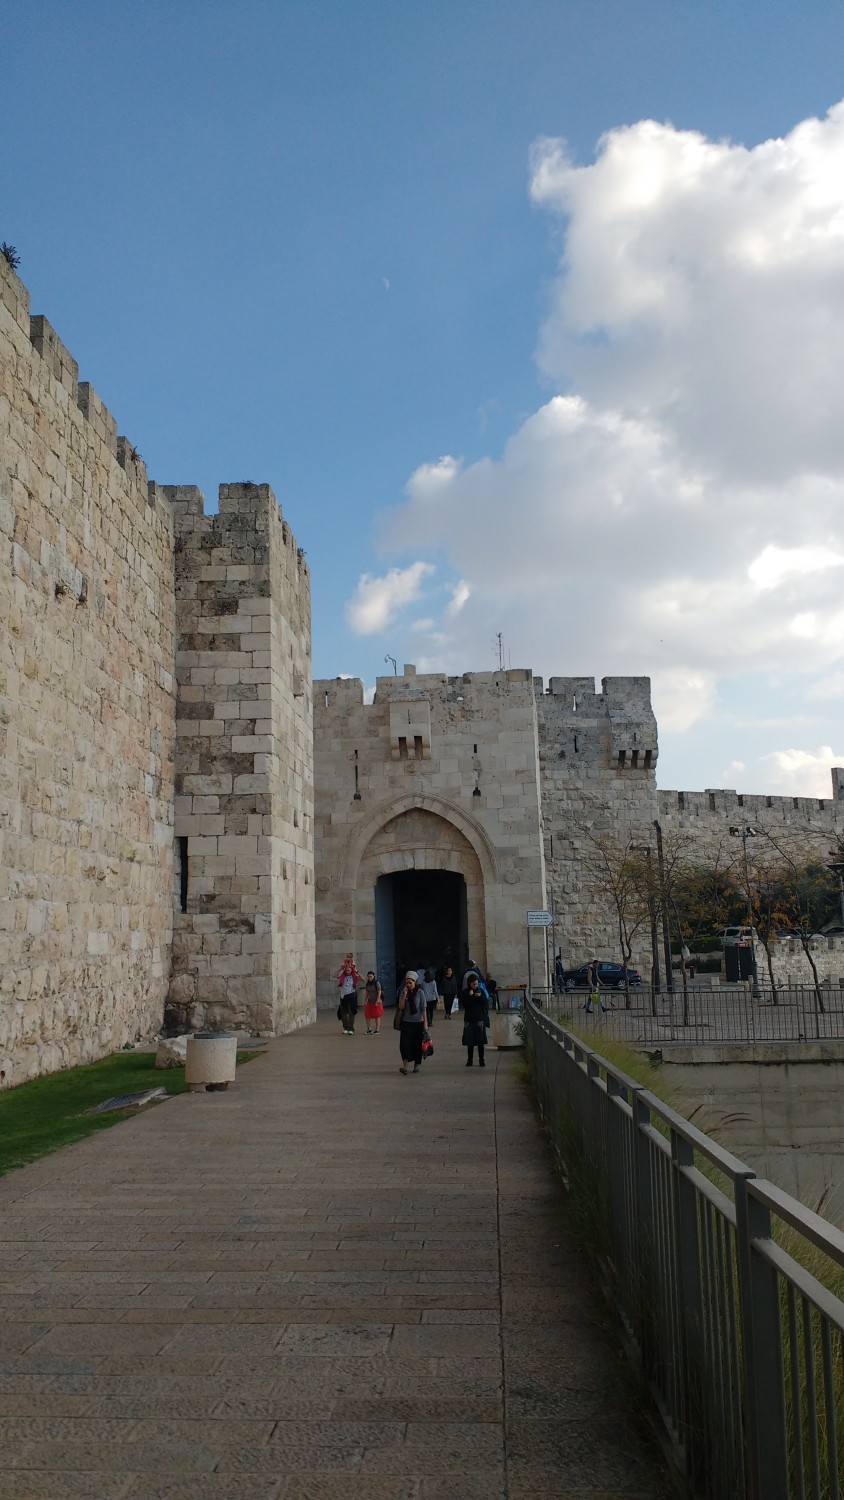 The Old City of Jerusalem